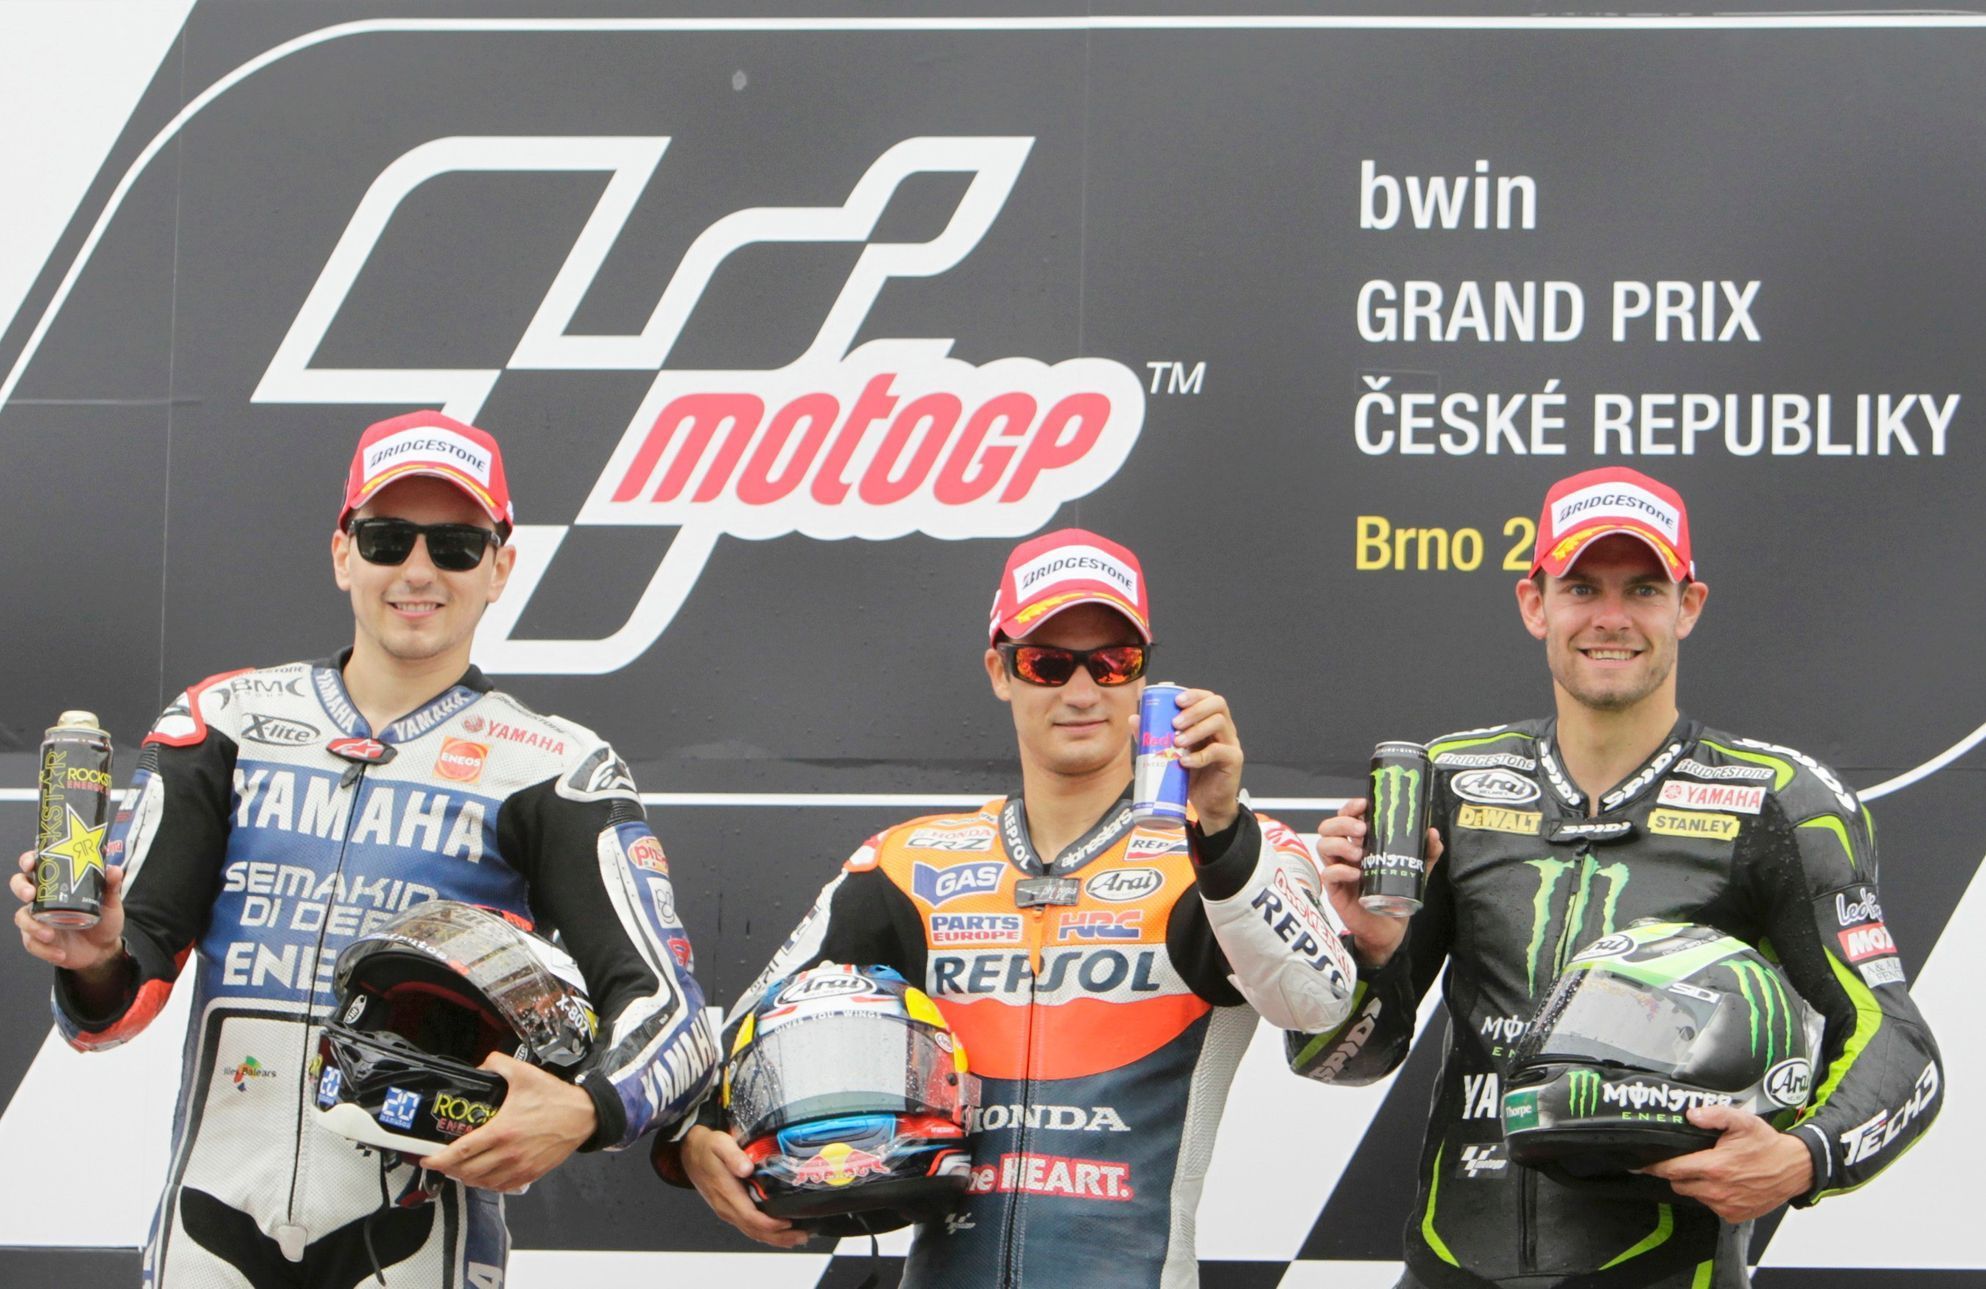 Španělští motocyklisté Dani Pedrosa (uprostřed) a Jorge Lorenzo (vlevo) slaví společně s Britem Calem Crutchlowem svá umístění ve Velké ceně České republiky 2012 v Brně.